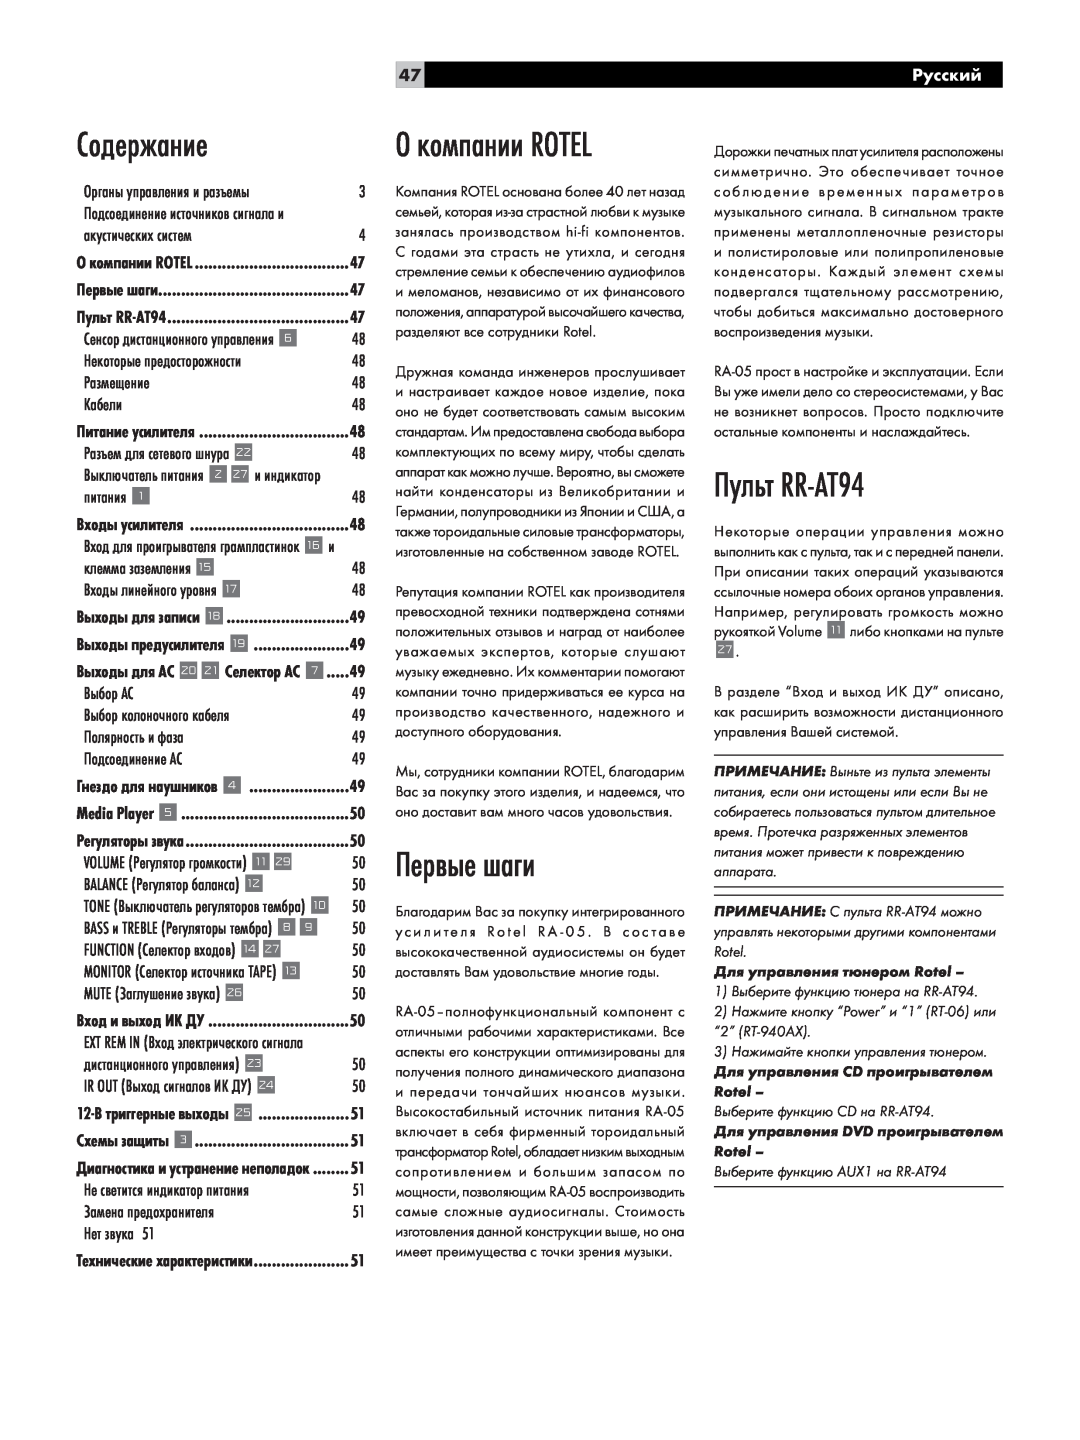 Rotel RA-05 owner manual Содержание, Первые шаги, Пульт RR-AT94, О компании ROTEL, Русский 